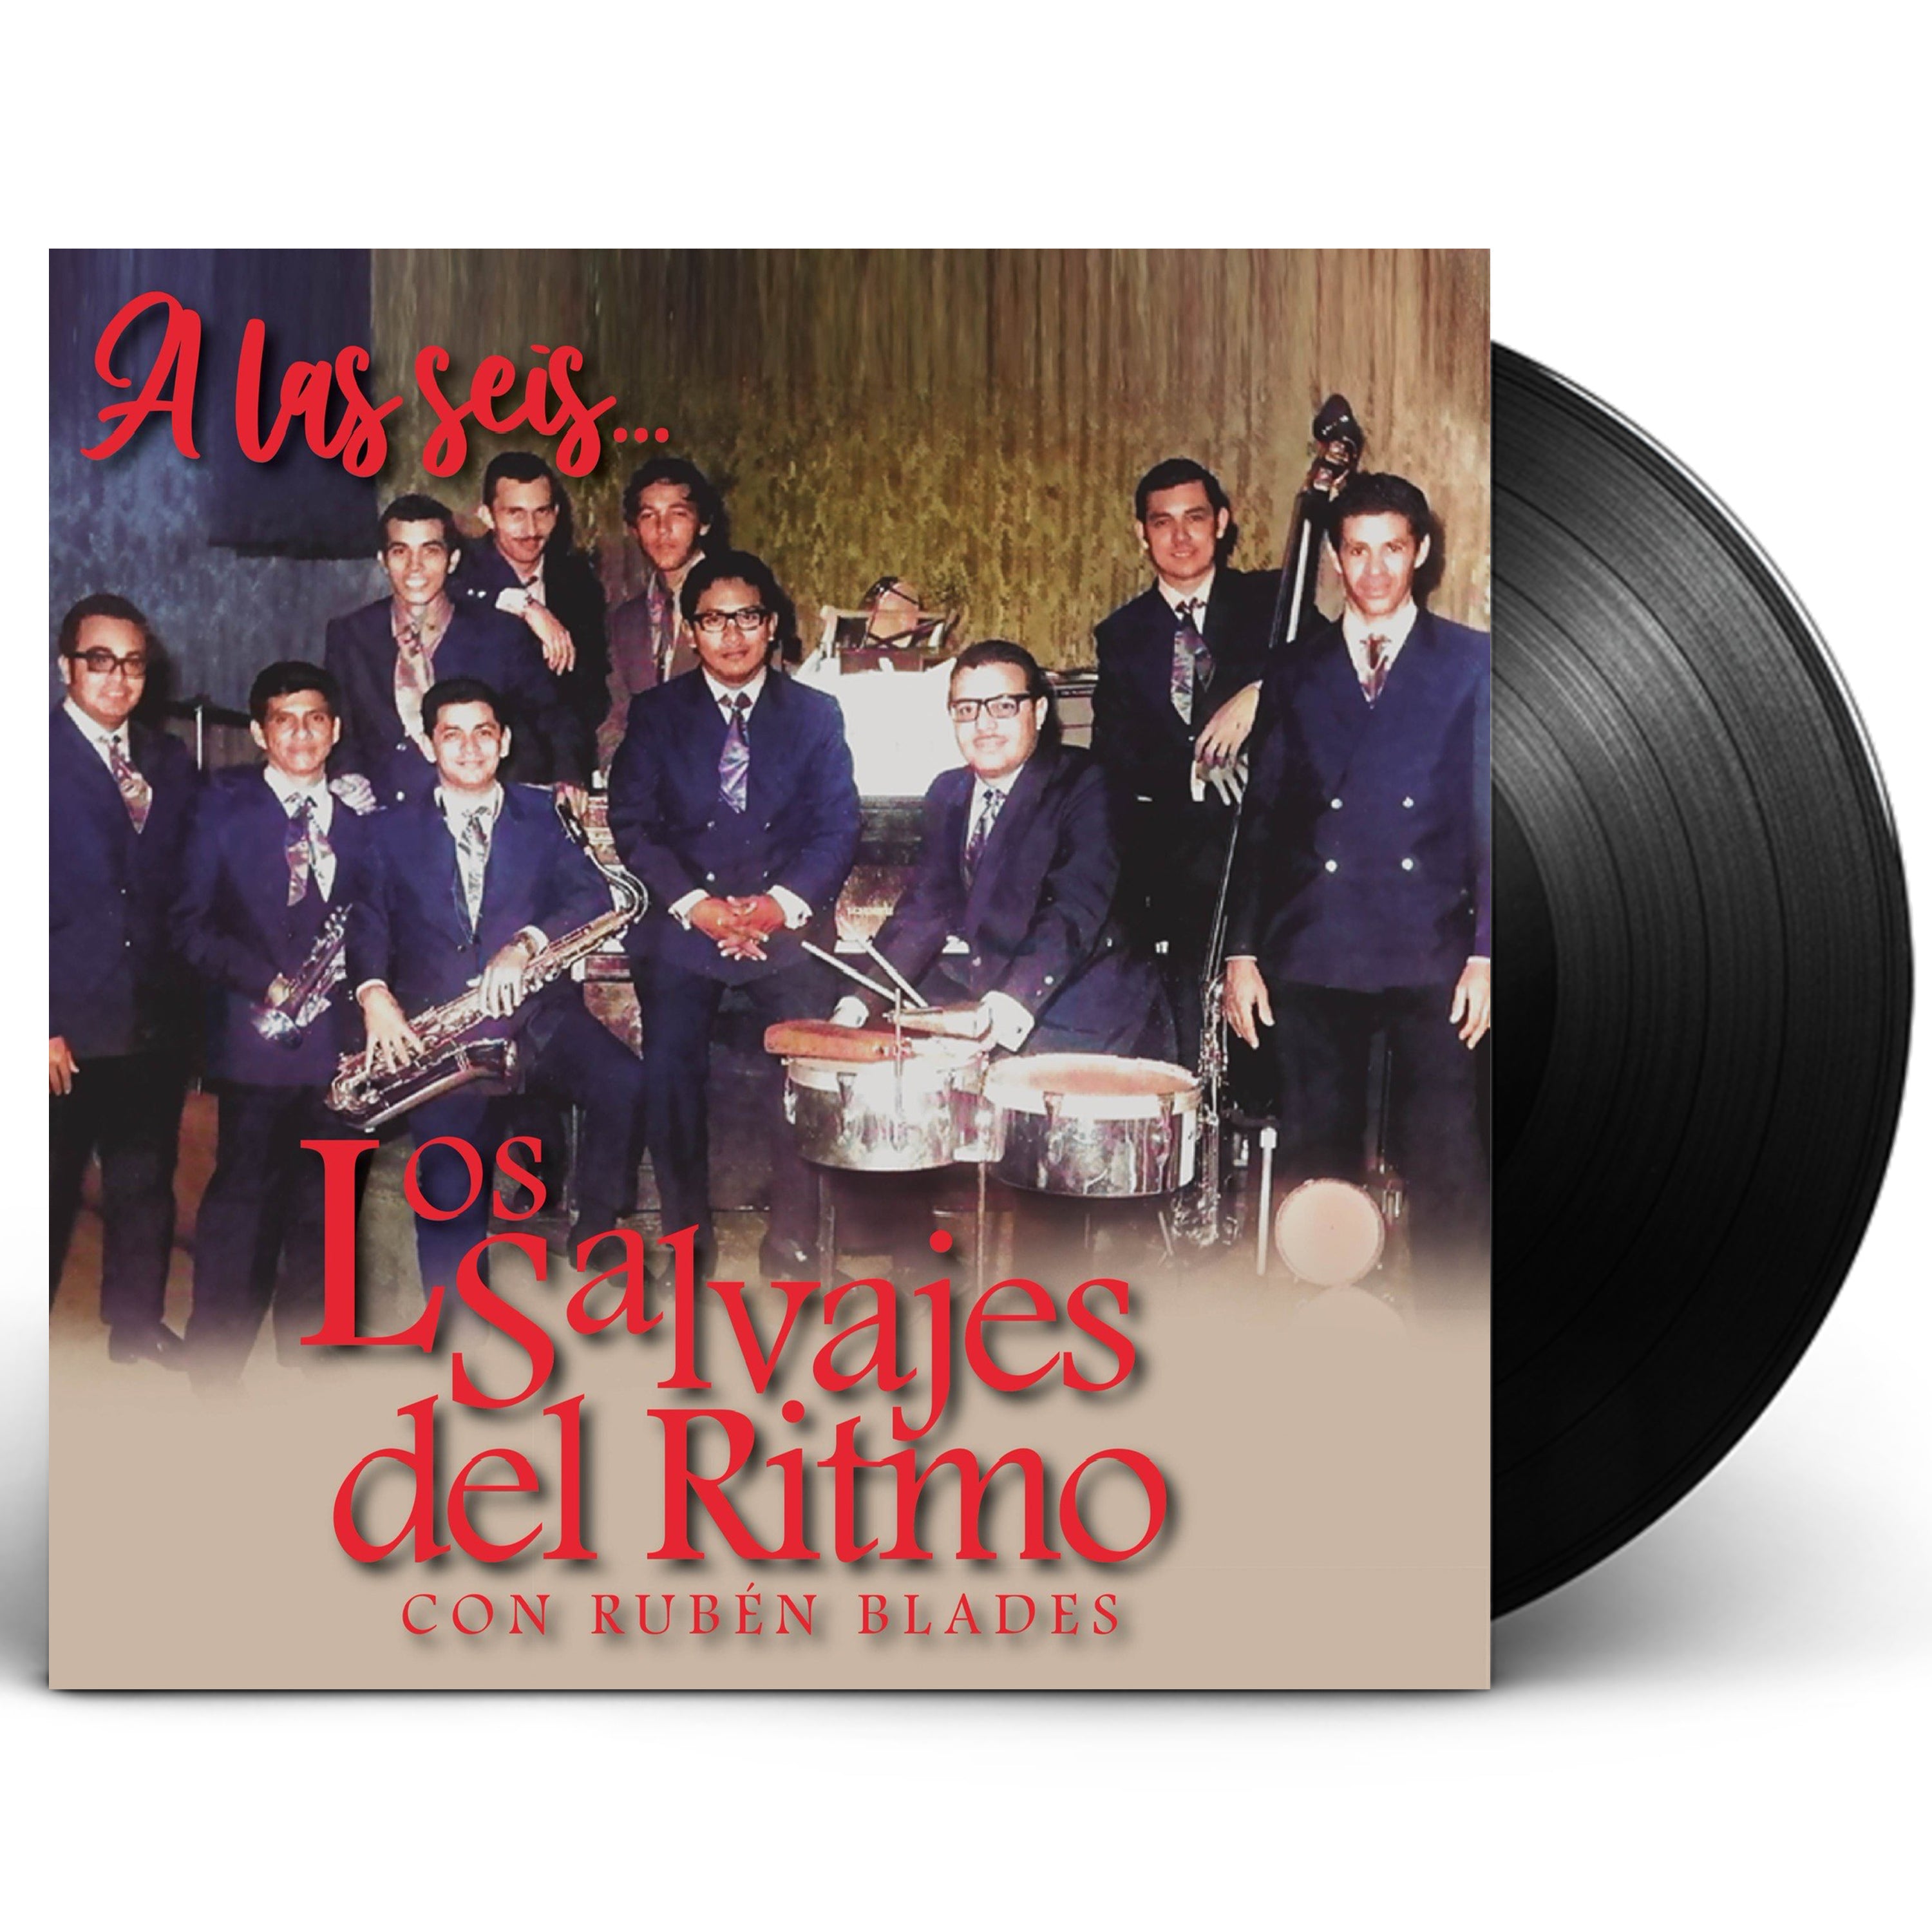 Los Salvajes del Ritmo con Rubén Blades - "A Las Seis" Vinyl